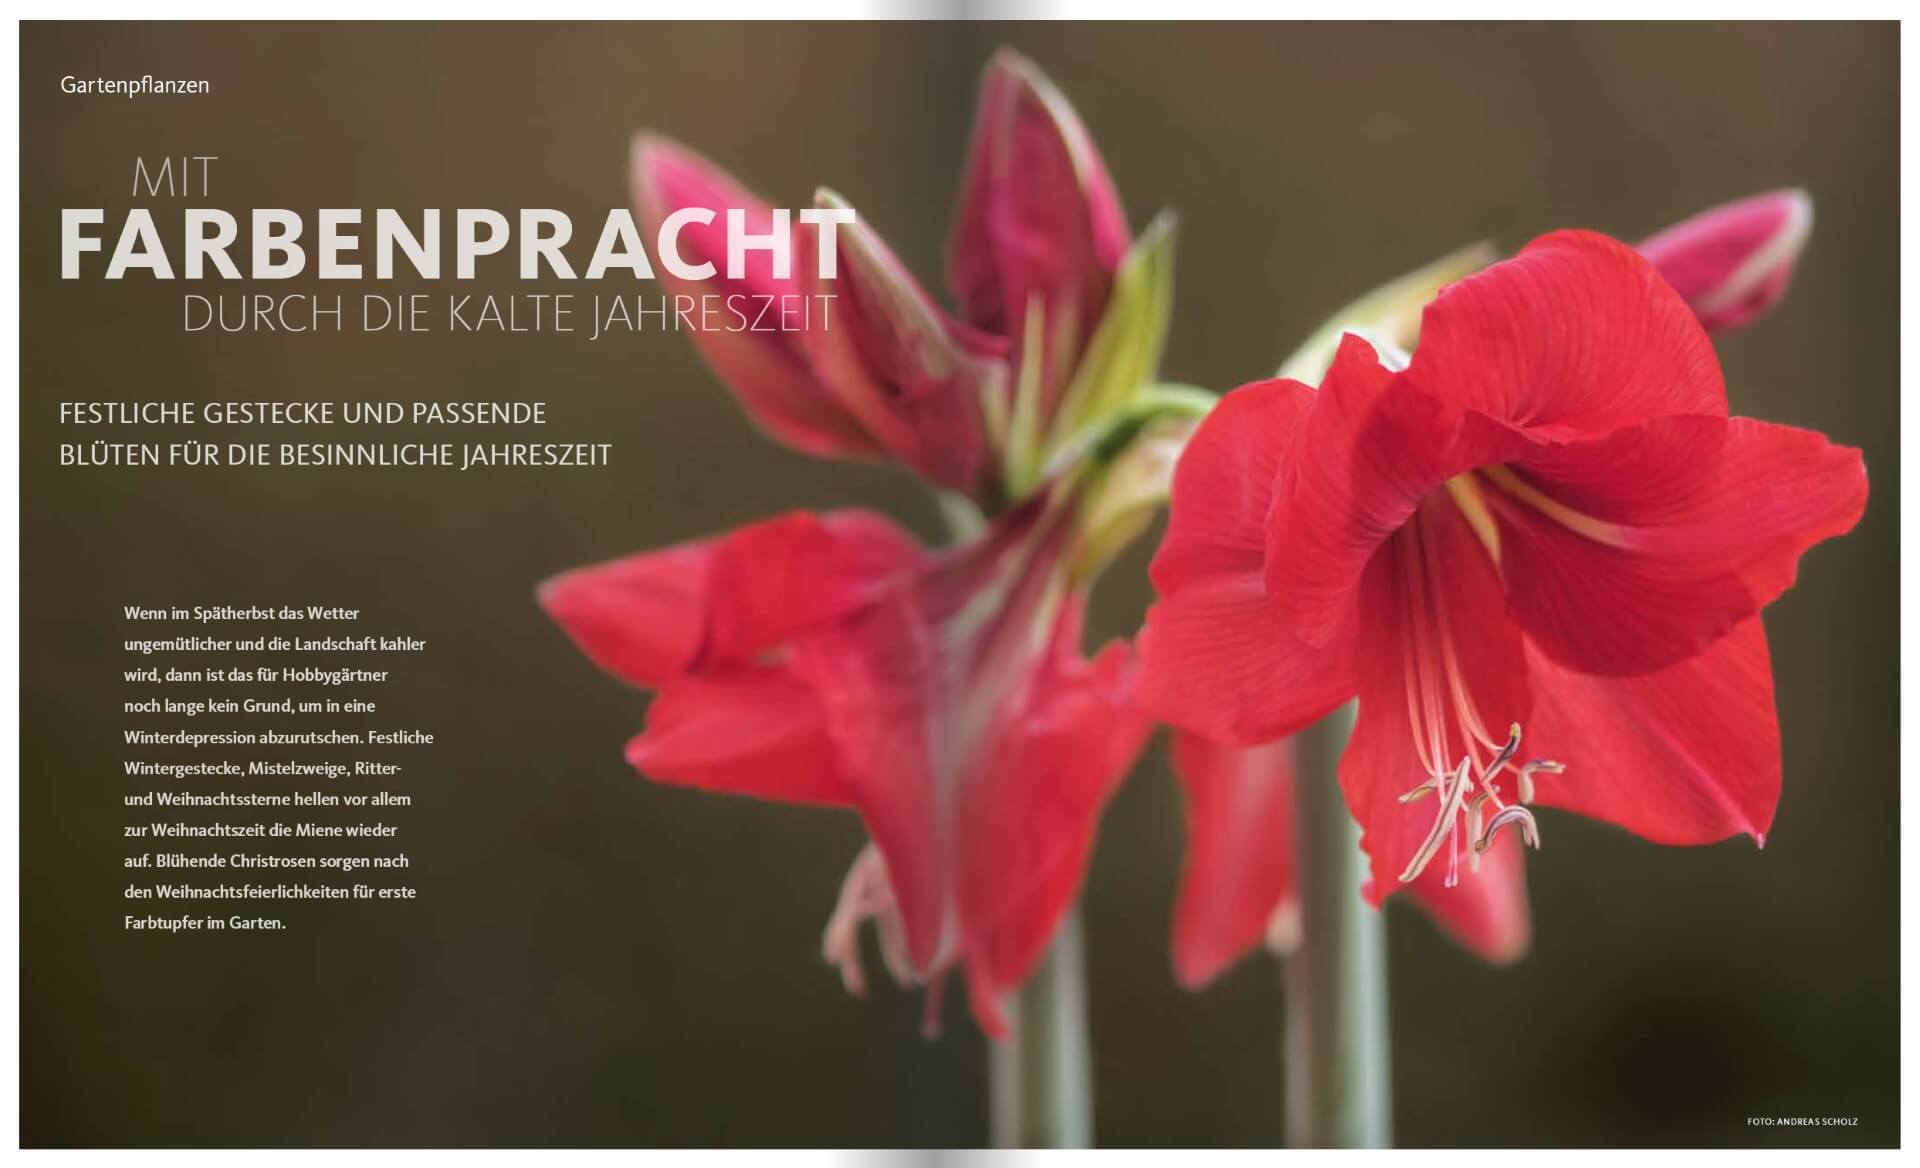 GARTENDESIGN INSPIRATION Ausgabe 6/2019: Gartenpflanzen und Farbenpracht im Winter